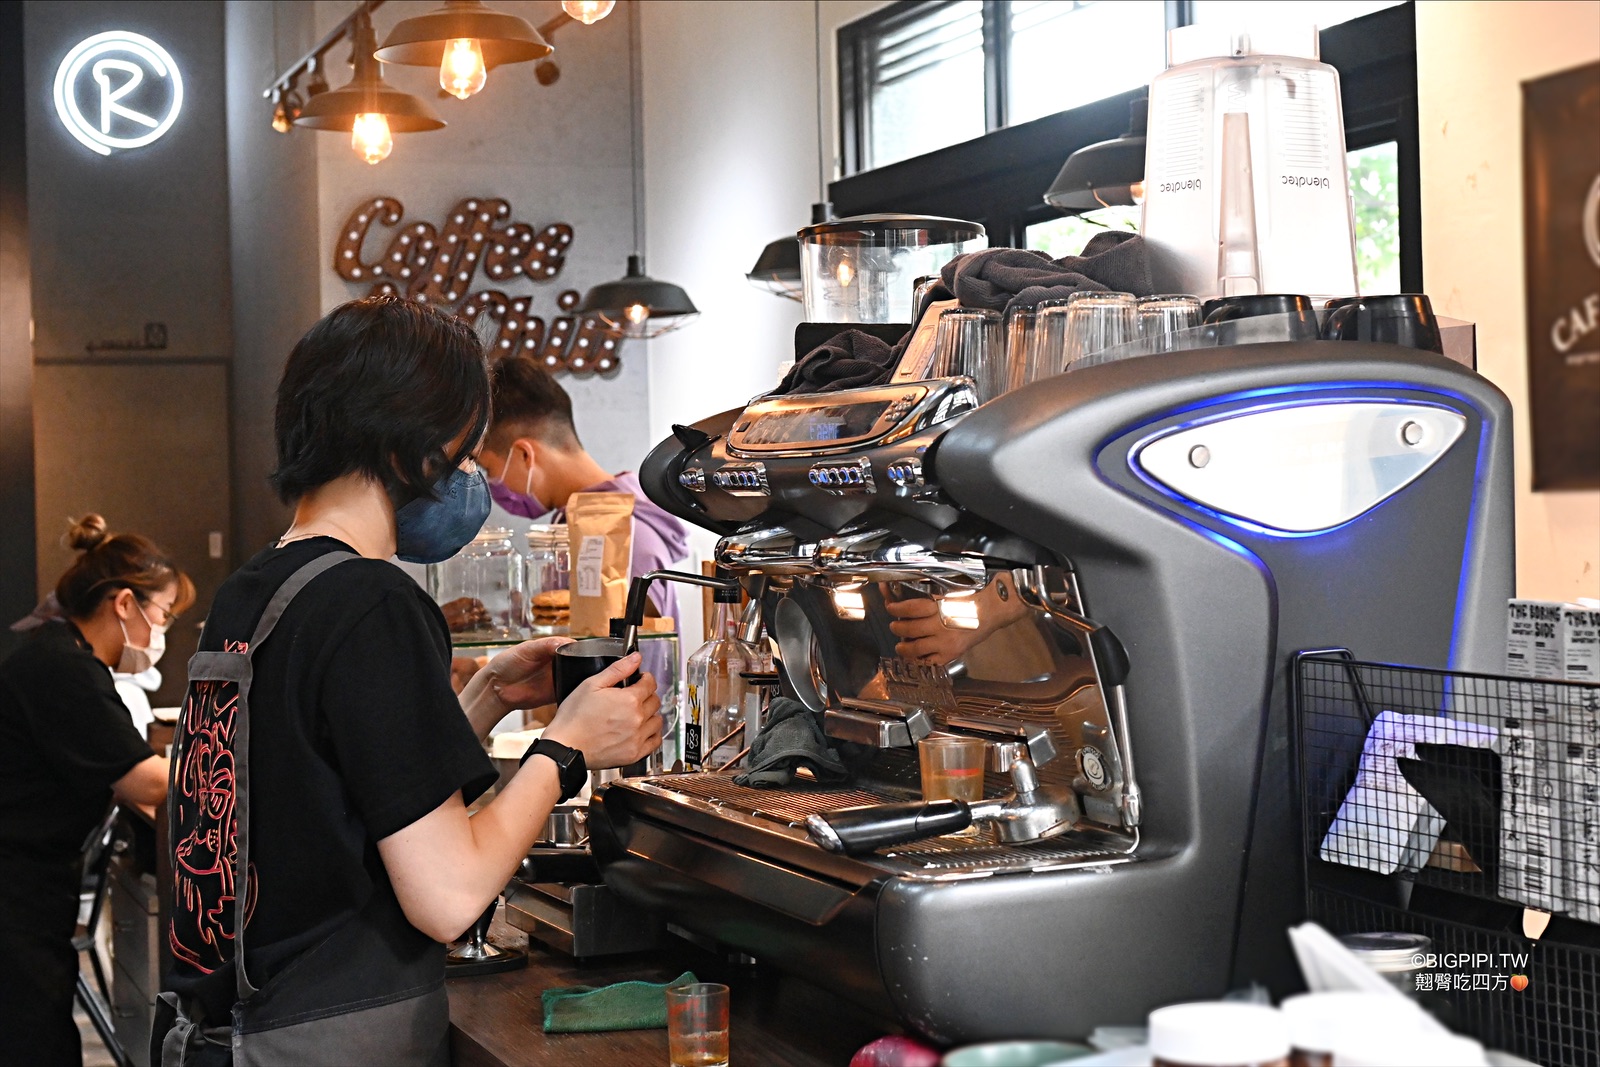 【芝山美食】路口加啡 Caffe’ Rue， 路口咖啡 天母sogo附近咖啡廳推薦 @翹臀吃四方